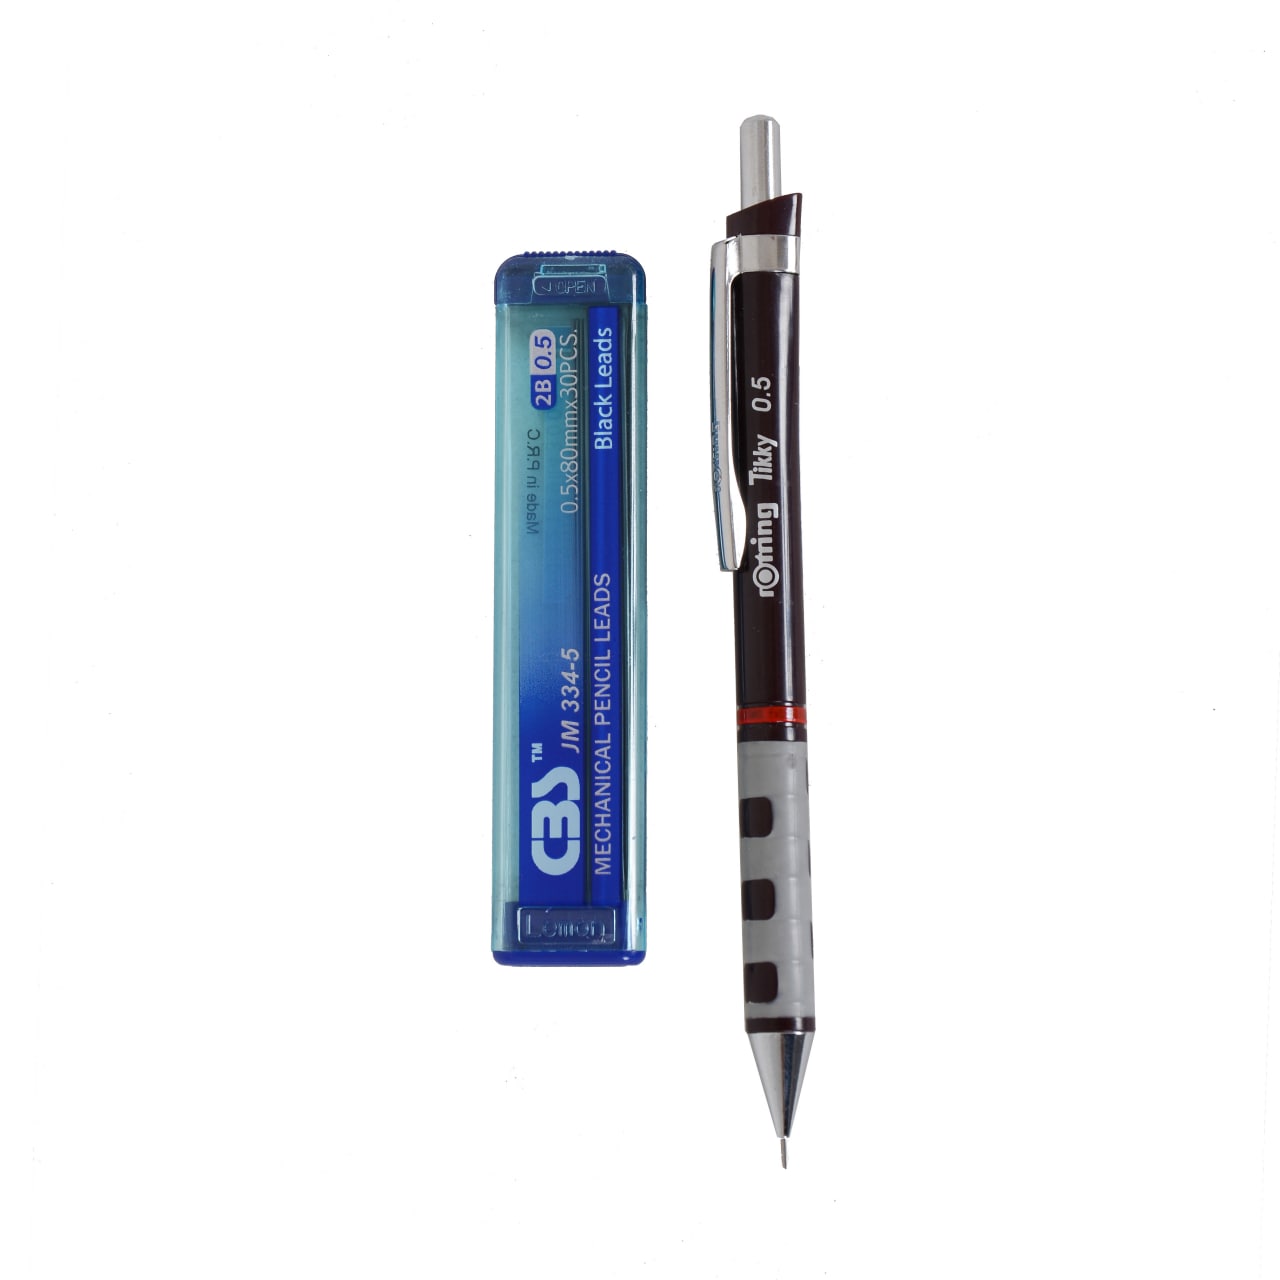 مداد نوکی 0.5 روترینگ کد 01 به همراه نوک 0.5 میلی متری سی بی اس